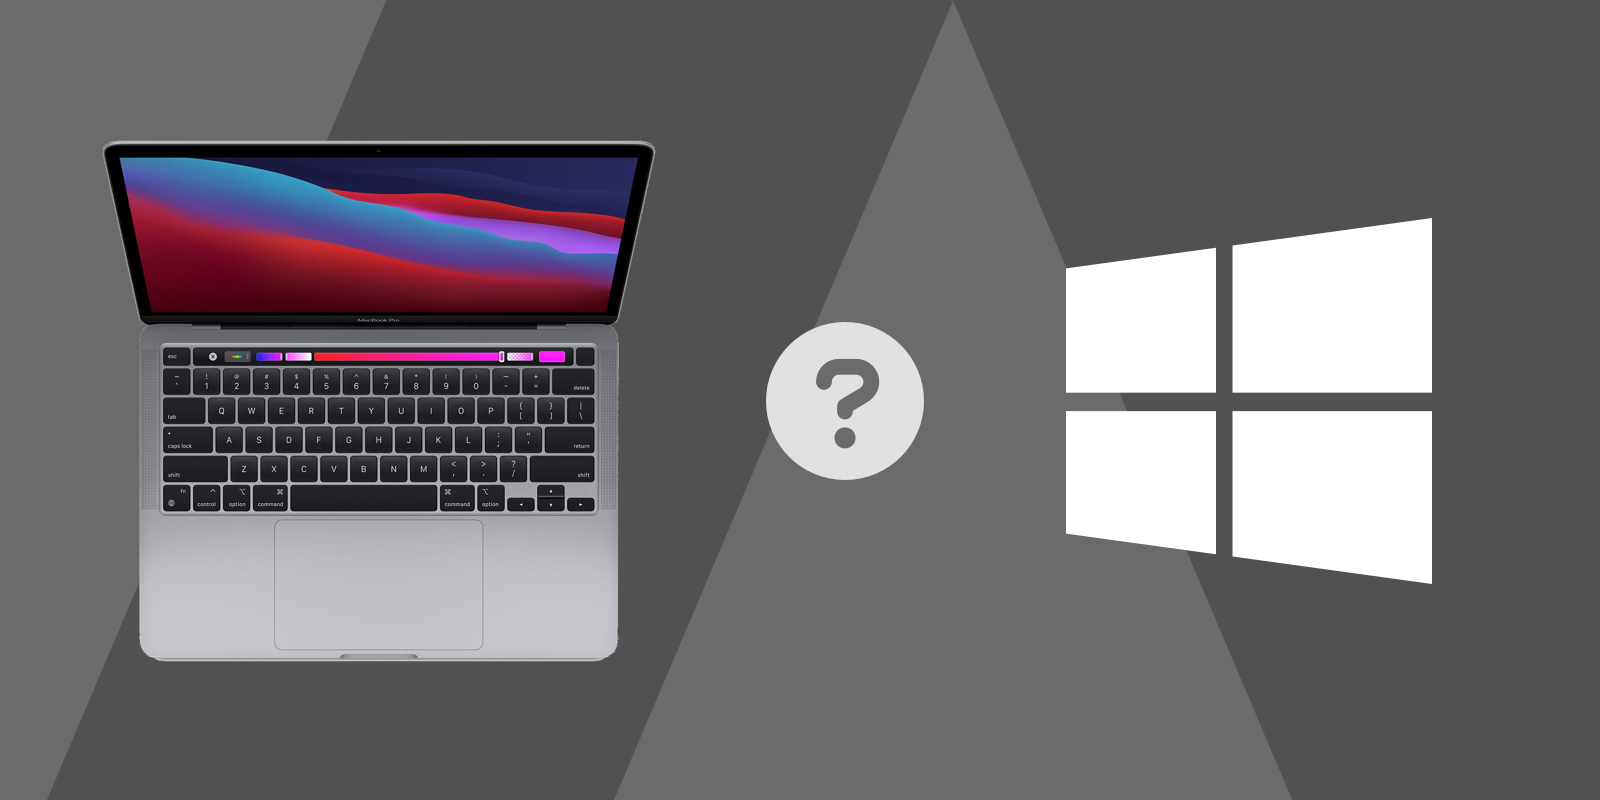 Mac or Windows